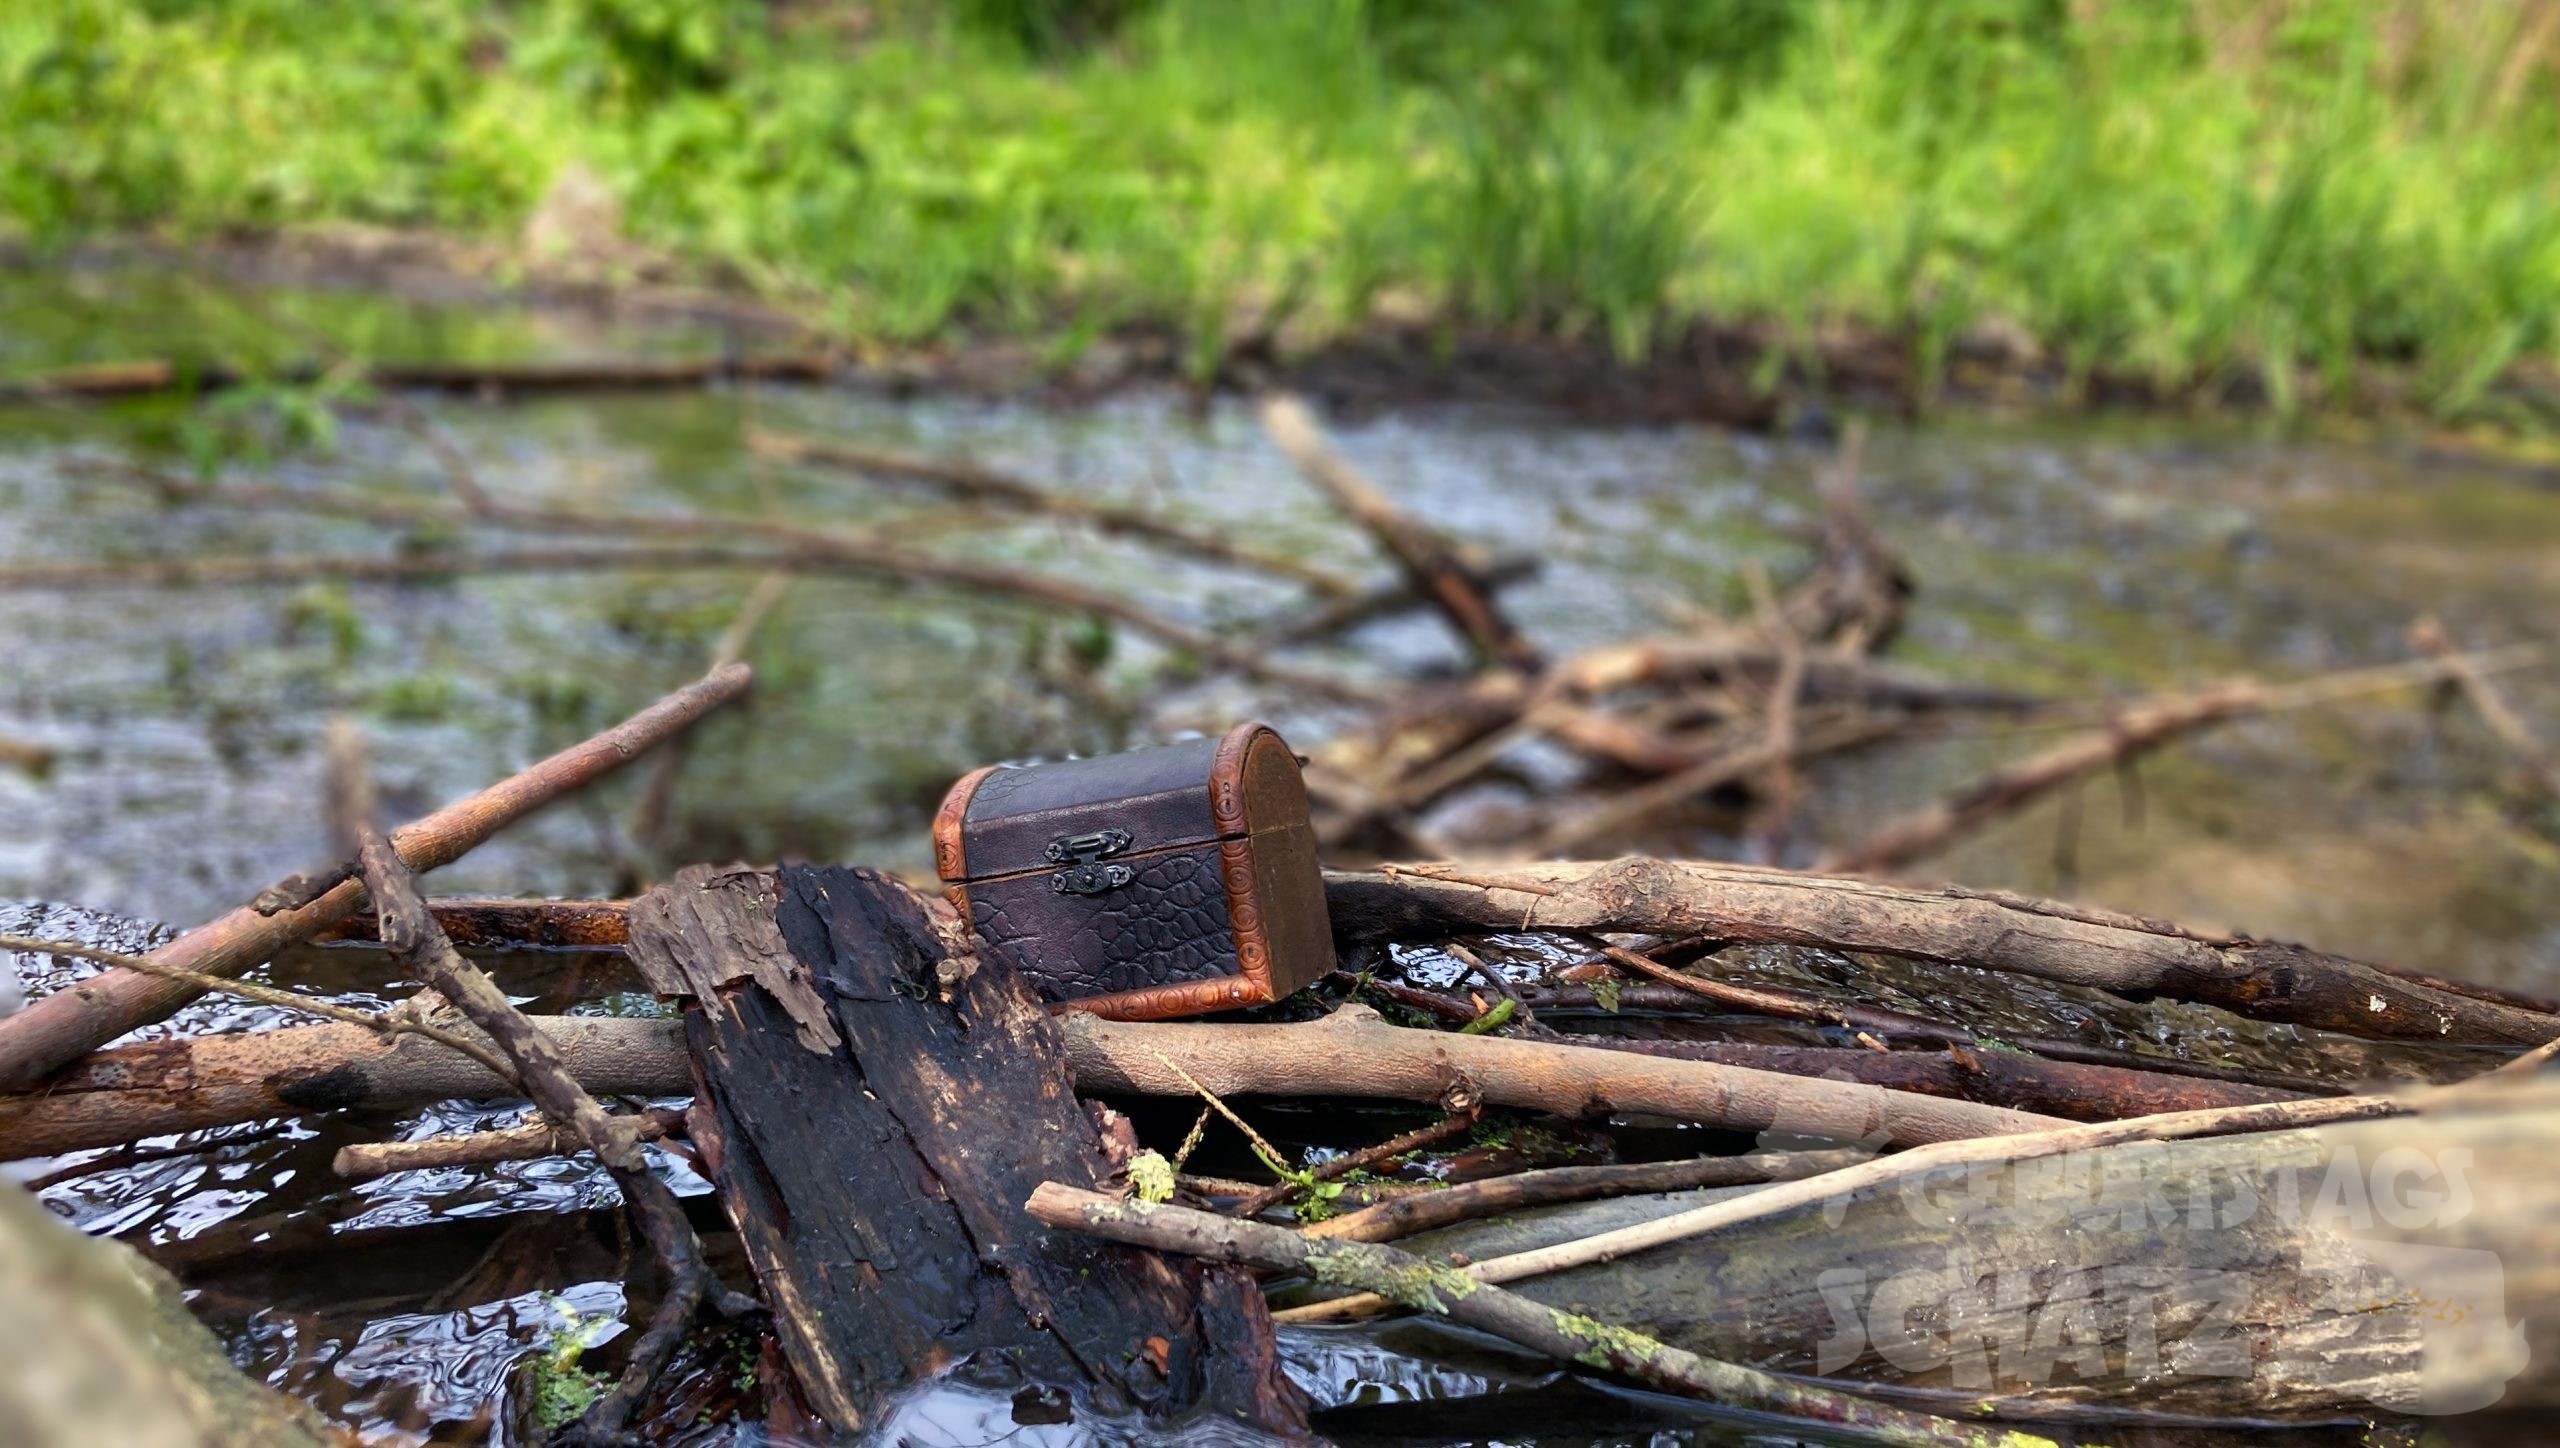 Eine kleine Schatztruhe aus Holz hat sich in Ästen in einem Bach verfangen. Sie ist geschlossen. Im Hintergrund wächst Gras am Ufer.